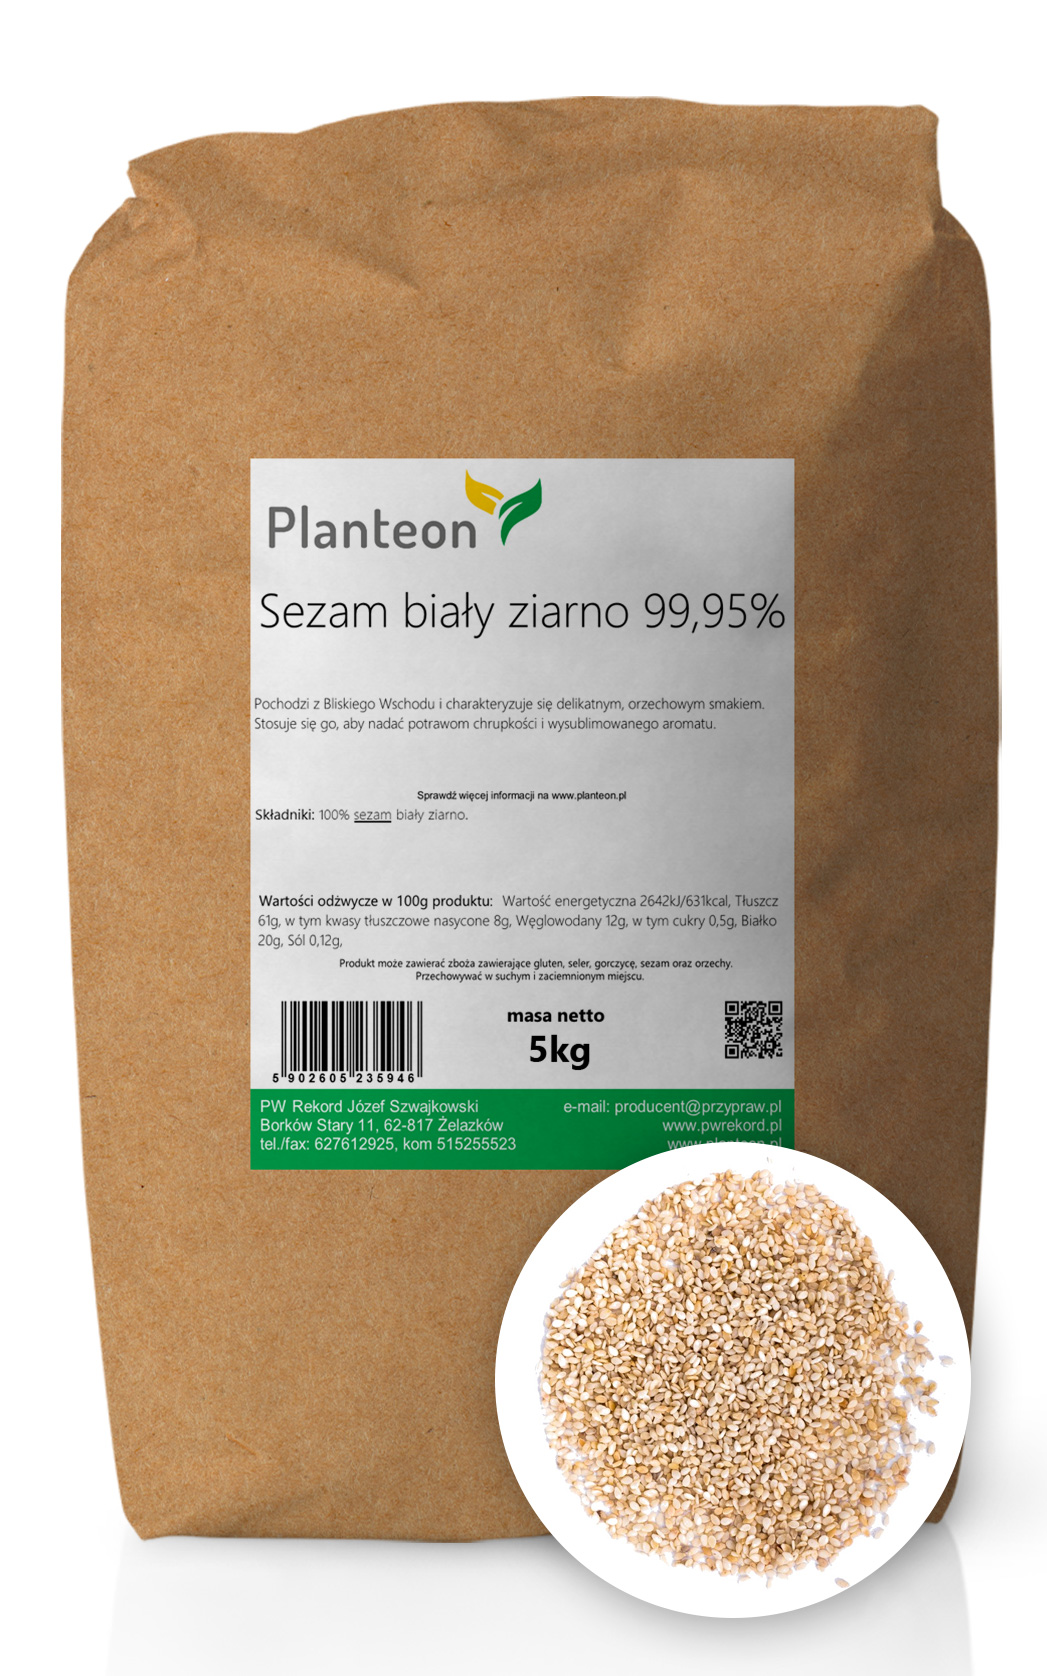 Planteon Sezam biały ziarno 99,95% 5kg 2-0036-02-6